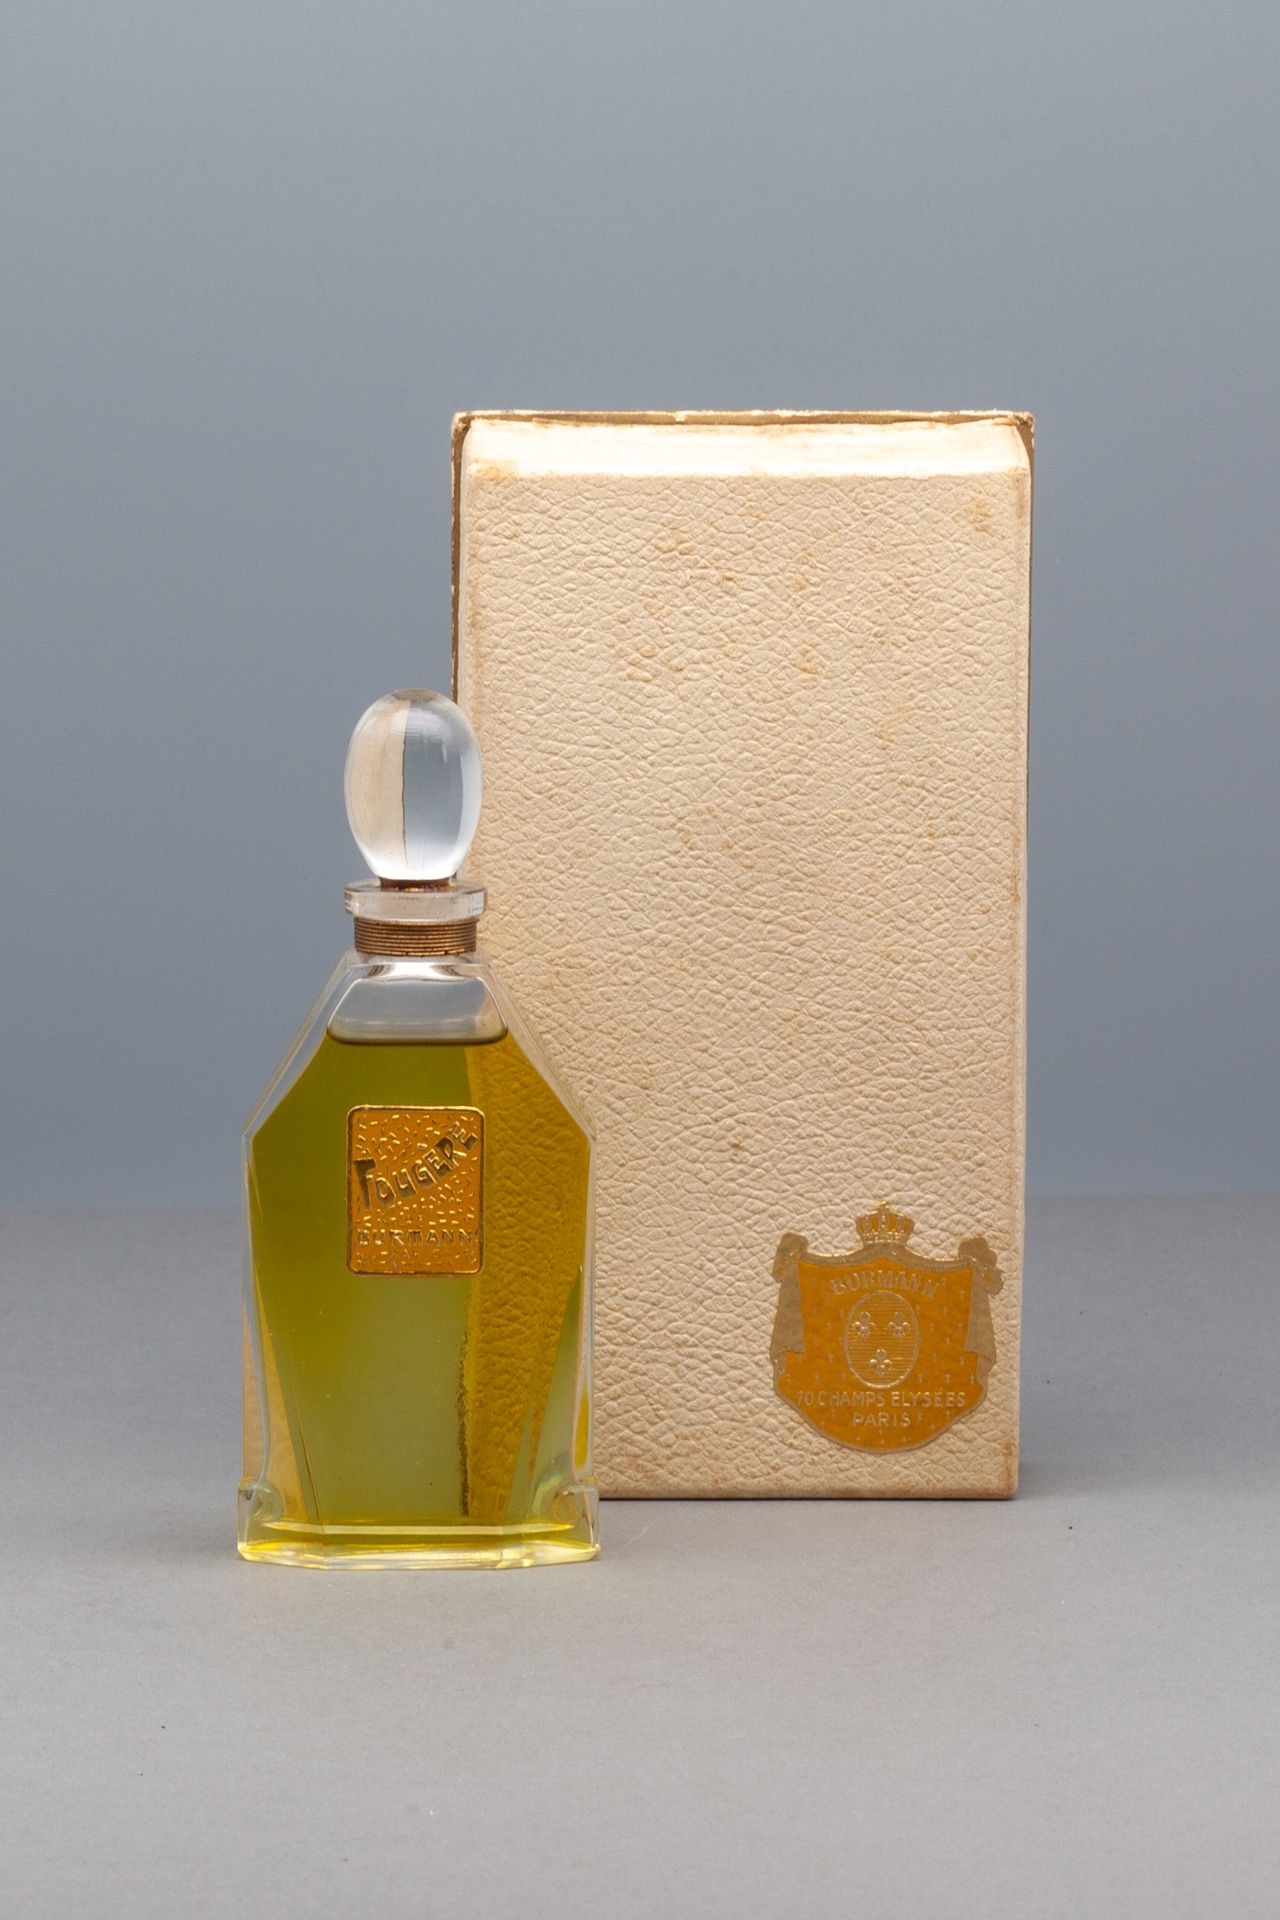 BURMANN "FOUGERE" 密封的香水瓶，上面有说明的标签。橄榄形的塞子。在它的盒子里，装饰着它的标题标签。高12.5厘米 - 盒子尺寸16x8.5厘米